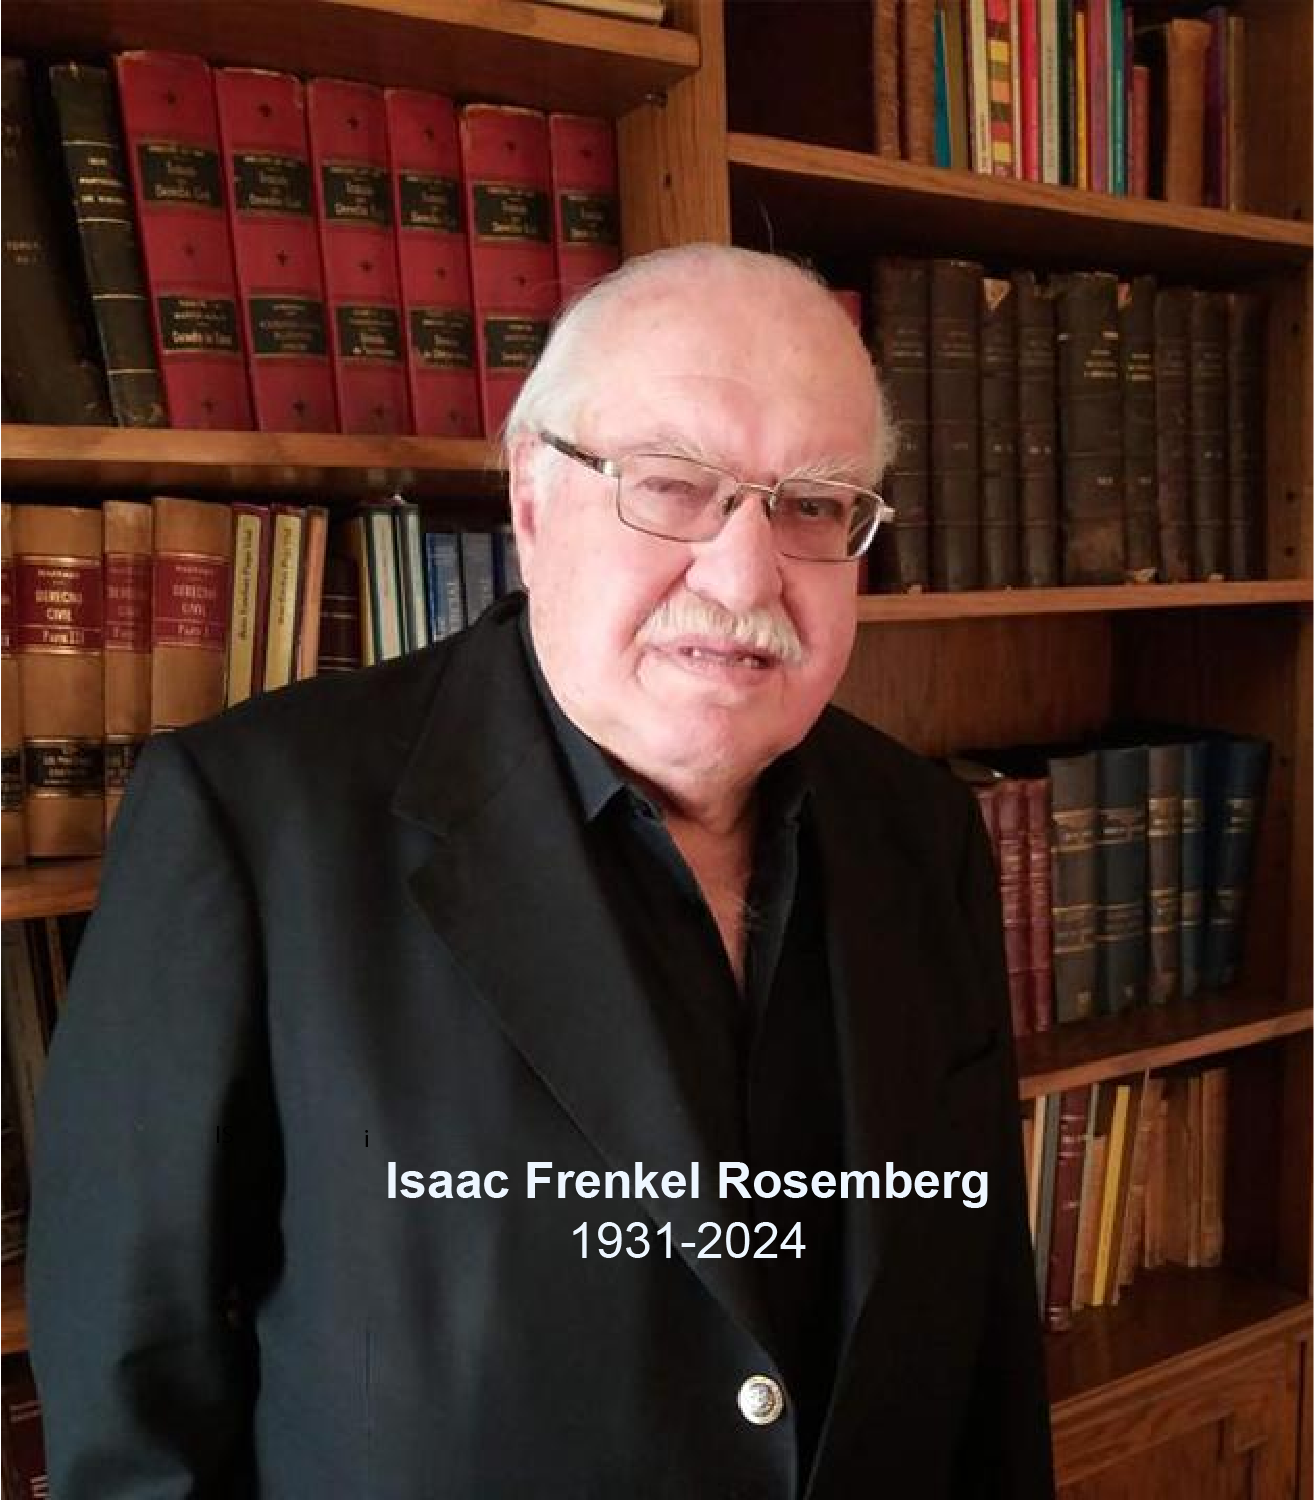  La Fundación de Orquestas Juveniles e Infantiles de Chile lamenta el sensible fallecimiento de su Vicepresidente Isaac Frenkel